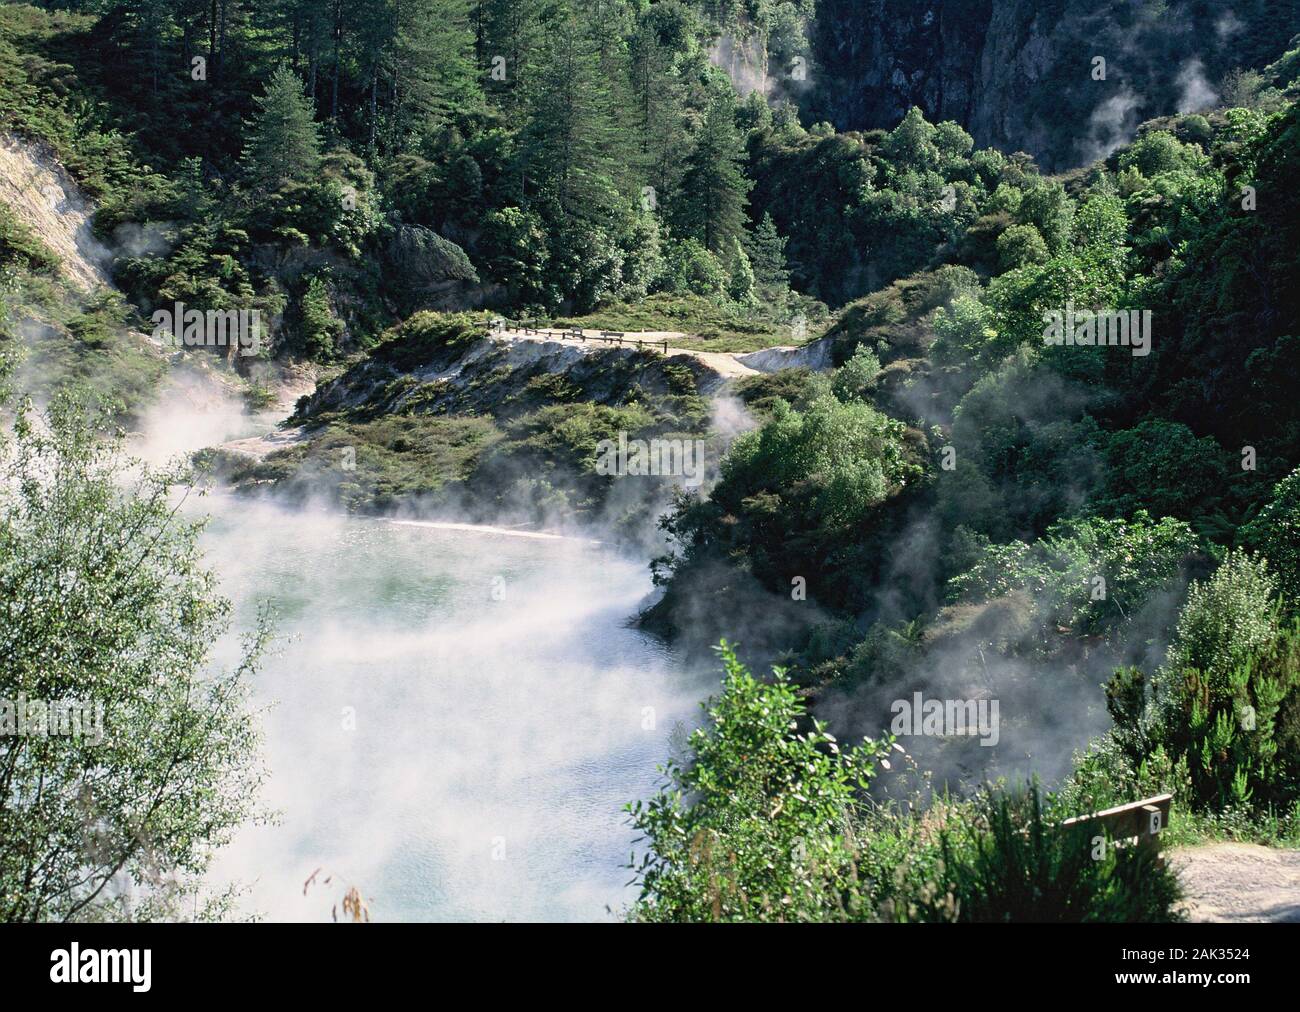 La vapeur provient de sources thermales dans la vallée de Waimangu. La vallée de Waimangu est situé sur l'île Nord de la Nouvelle-Zélande qui se caractérise Banque D'Images